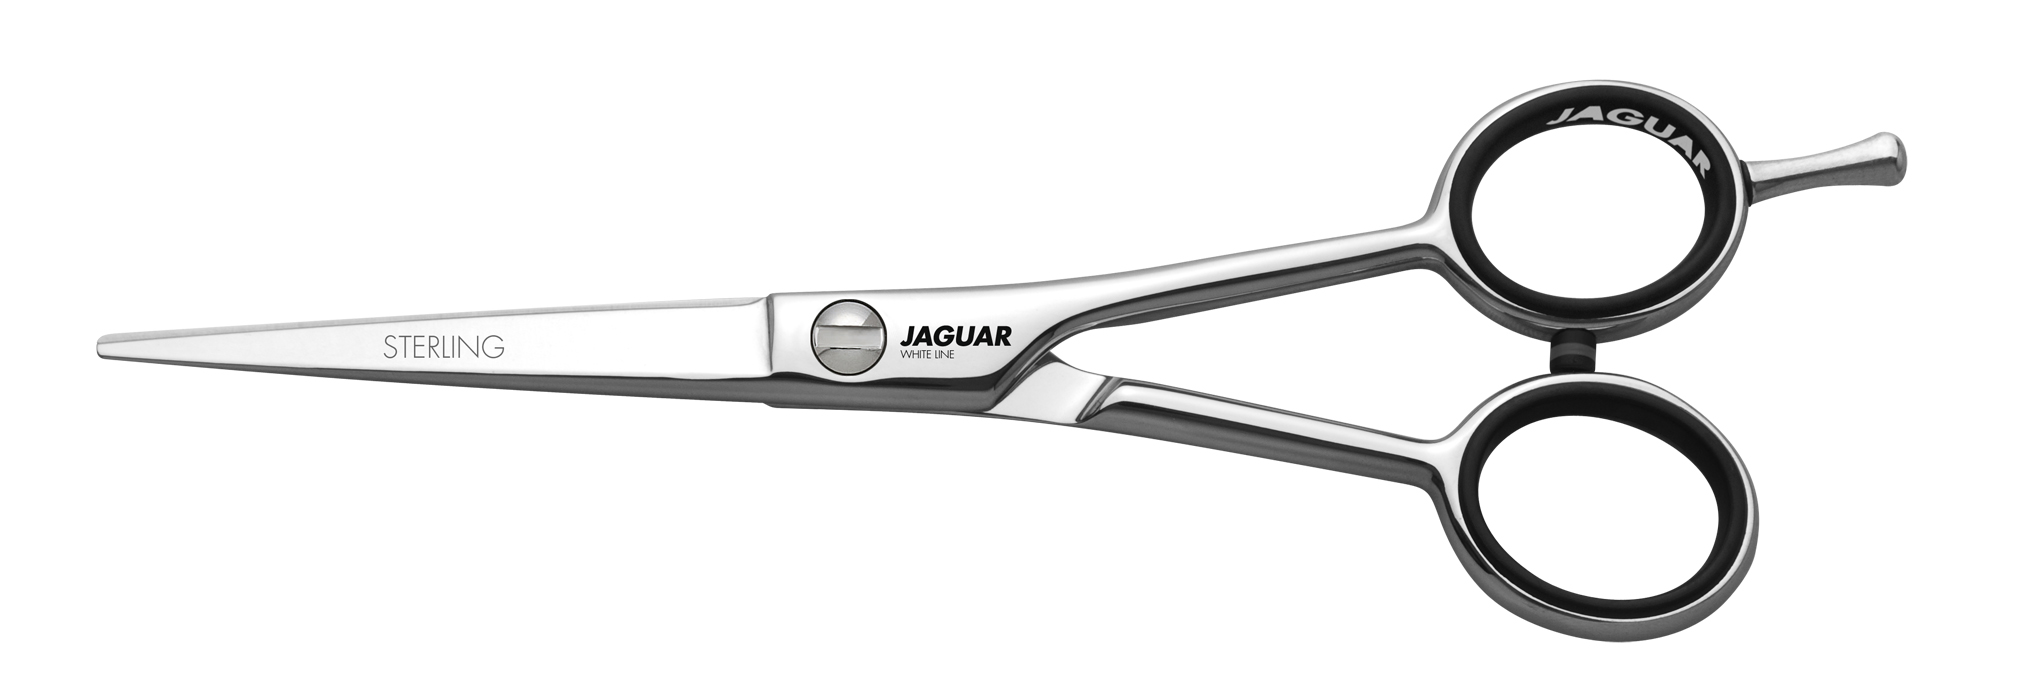 JAGUAR Ножницы Jaguar Sterling 5(13cm)WL